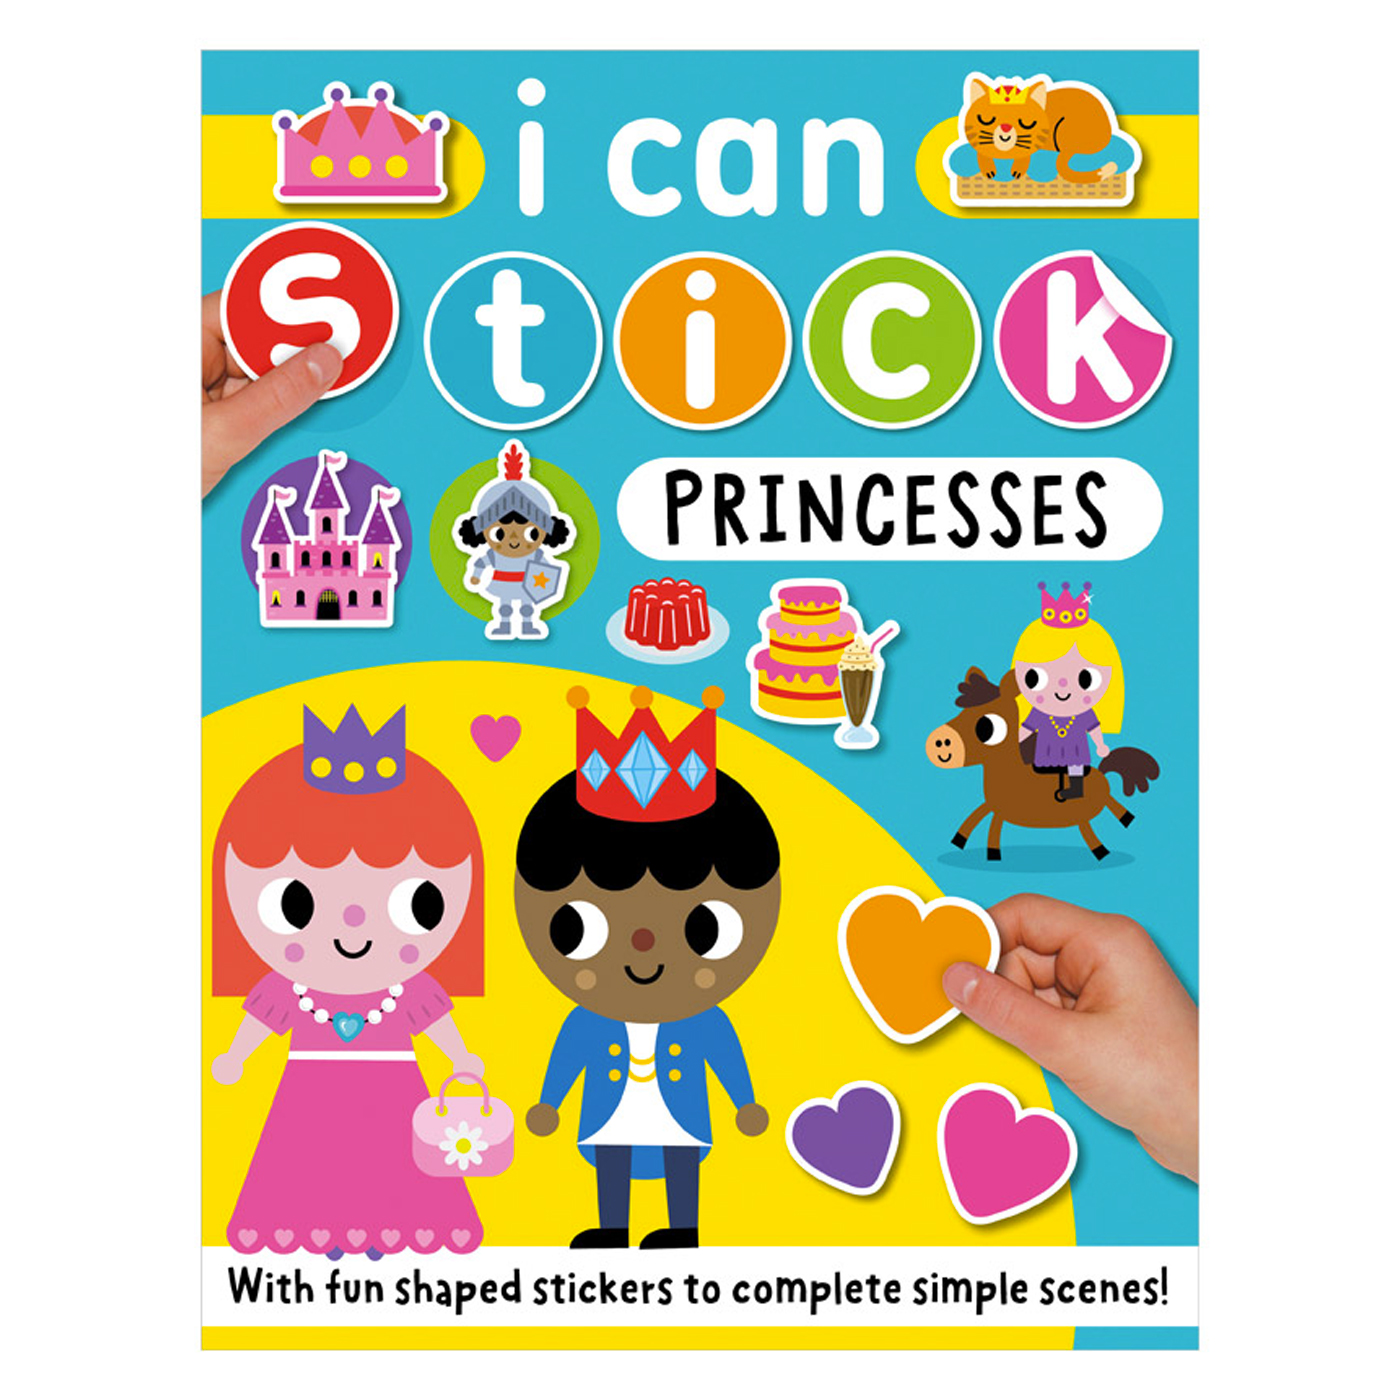  I Can Stick Princesses